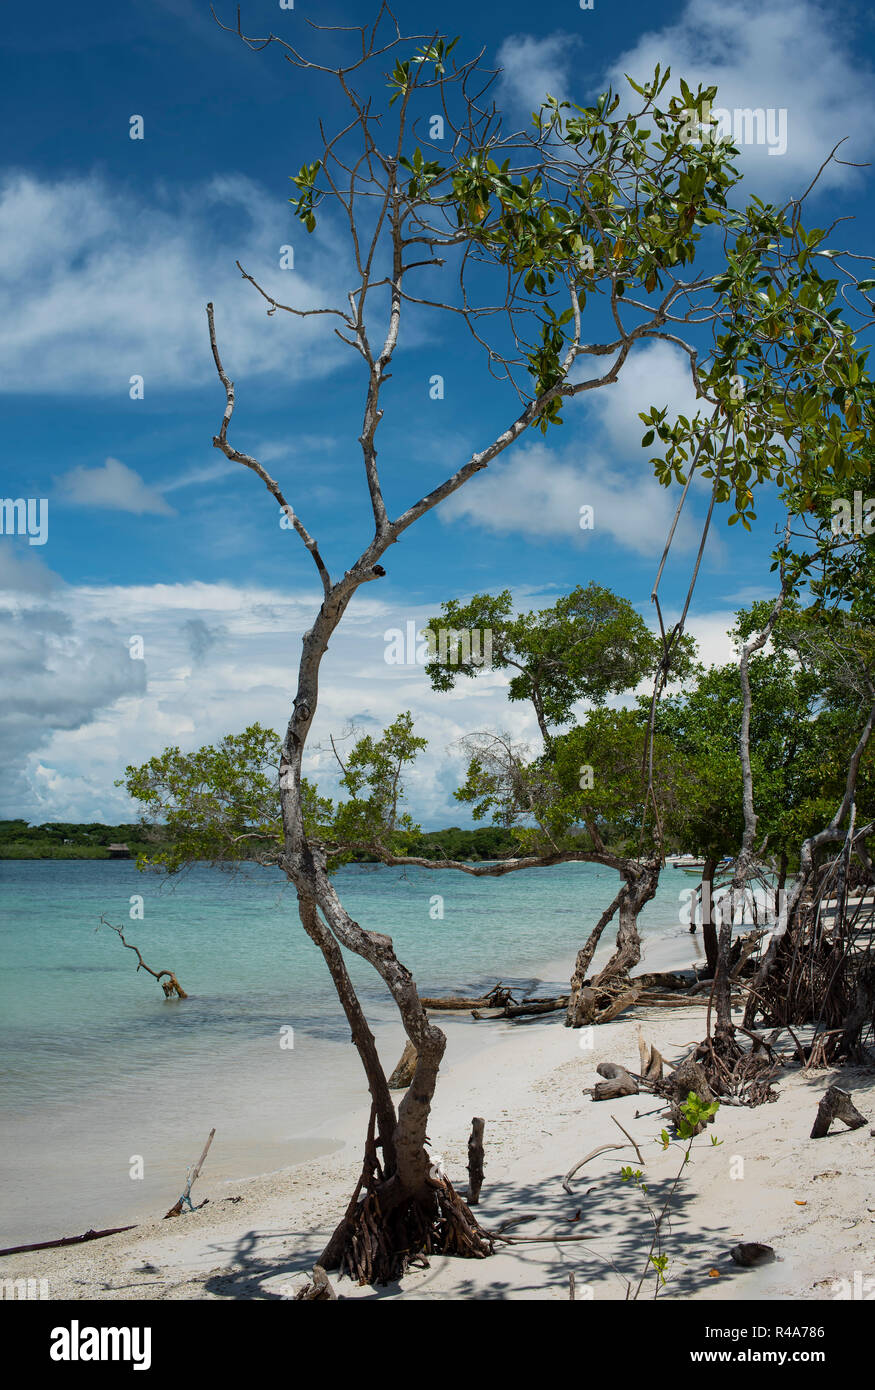 Vue verticale d'un arbre sur la plage de Playa Azul (bleu) : une plage privée tranquille, une partie de l'île Rosario Islands. Près de Cartagena de Indias, Colombie Banque D'Images